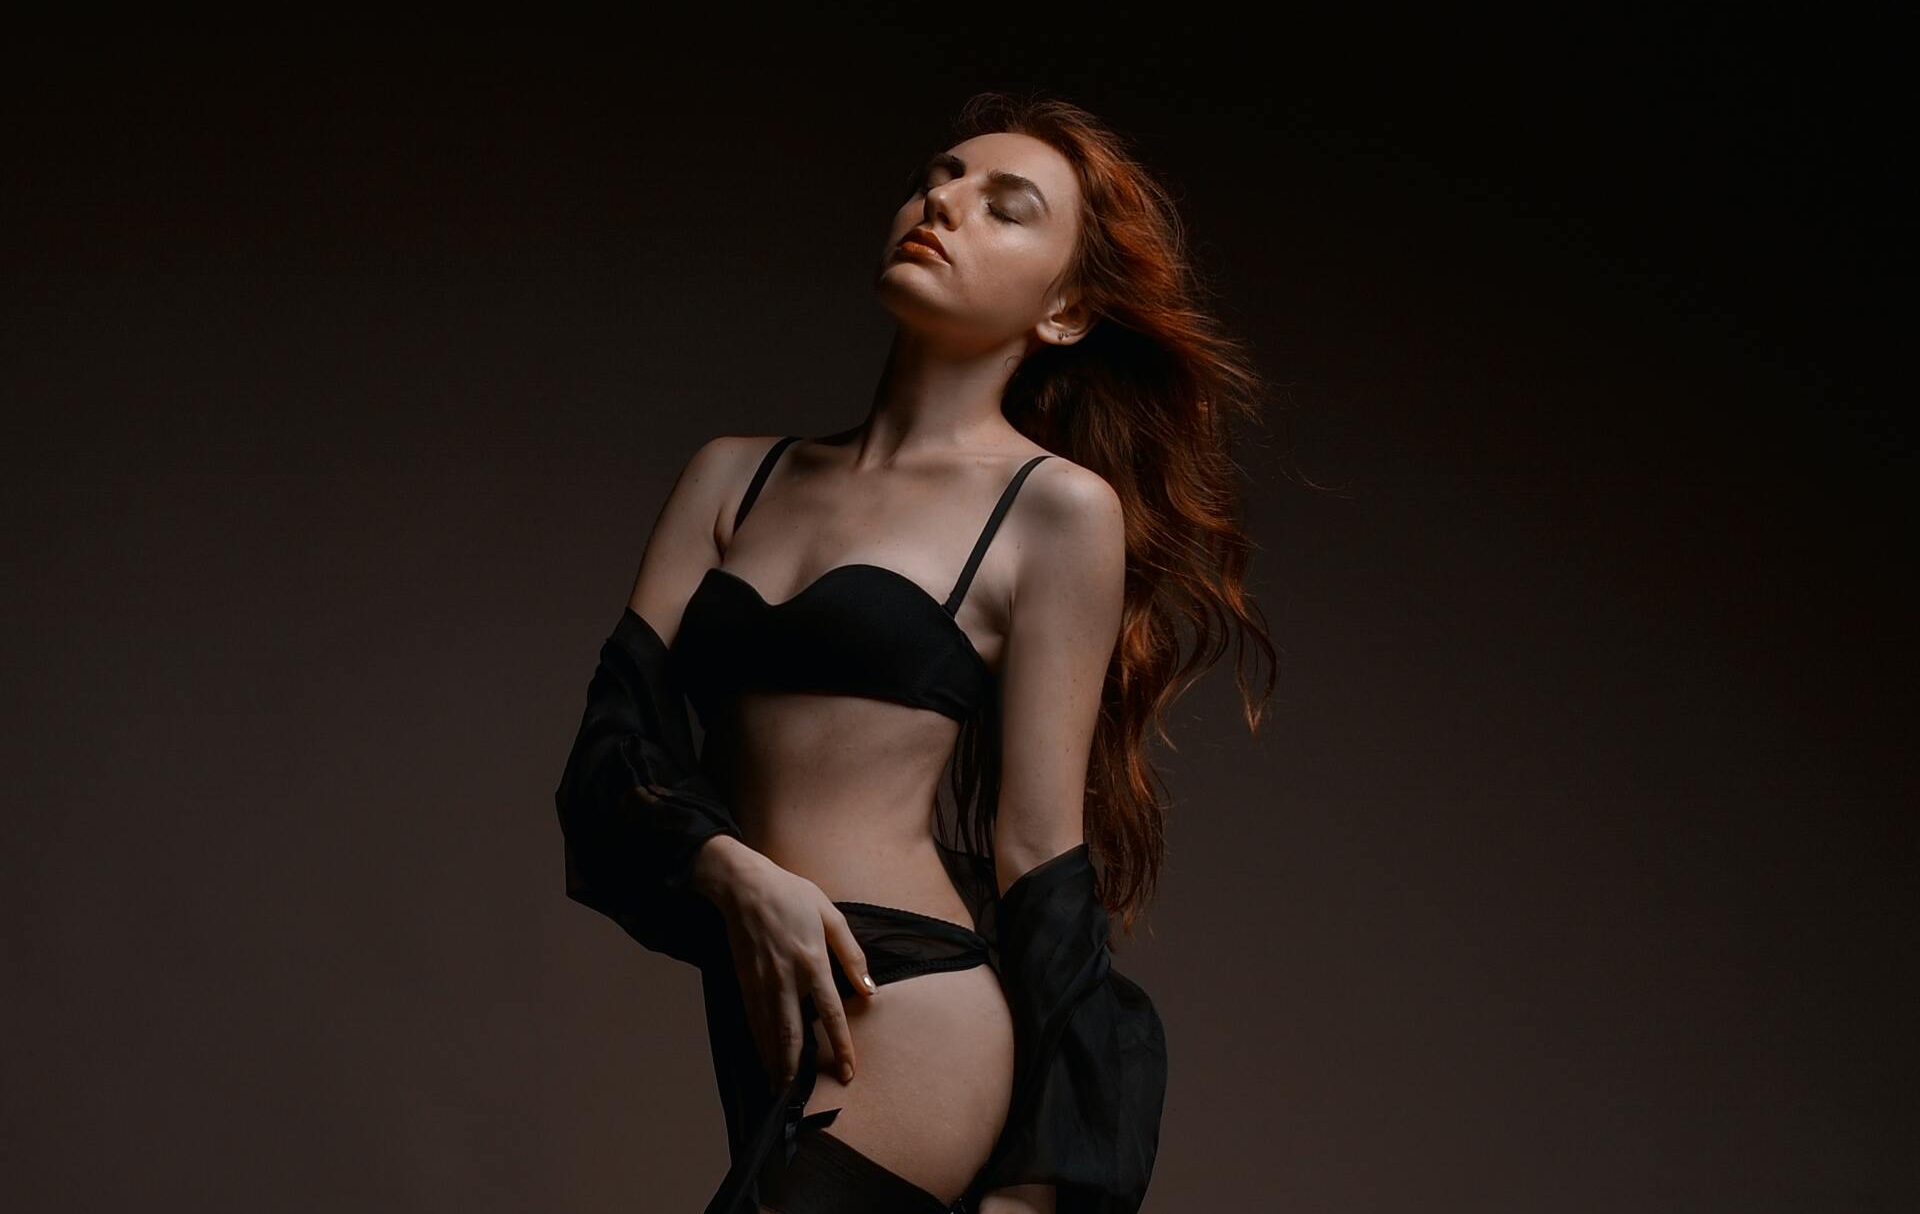 Een vrouw poseert tijdens een boudoir fotoshoot